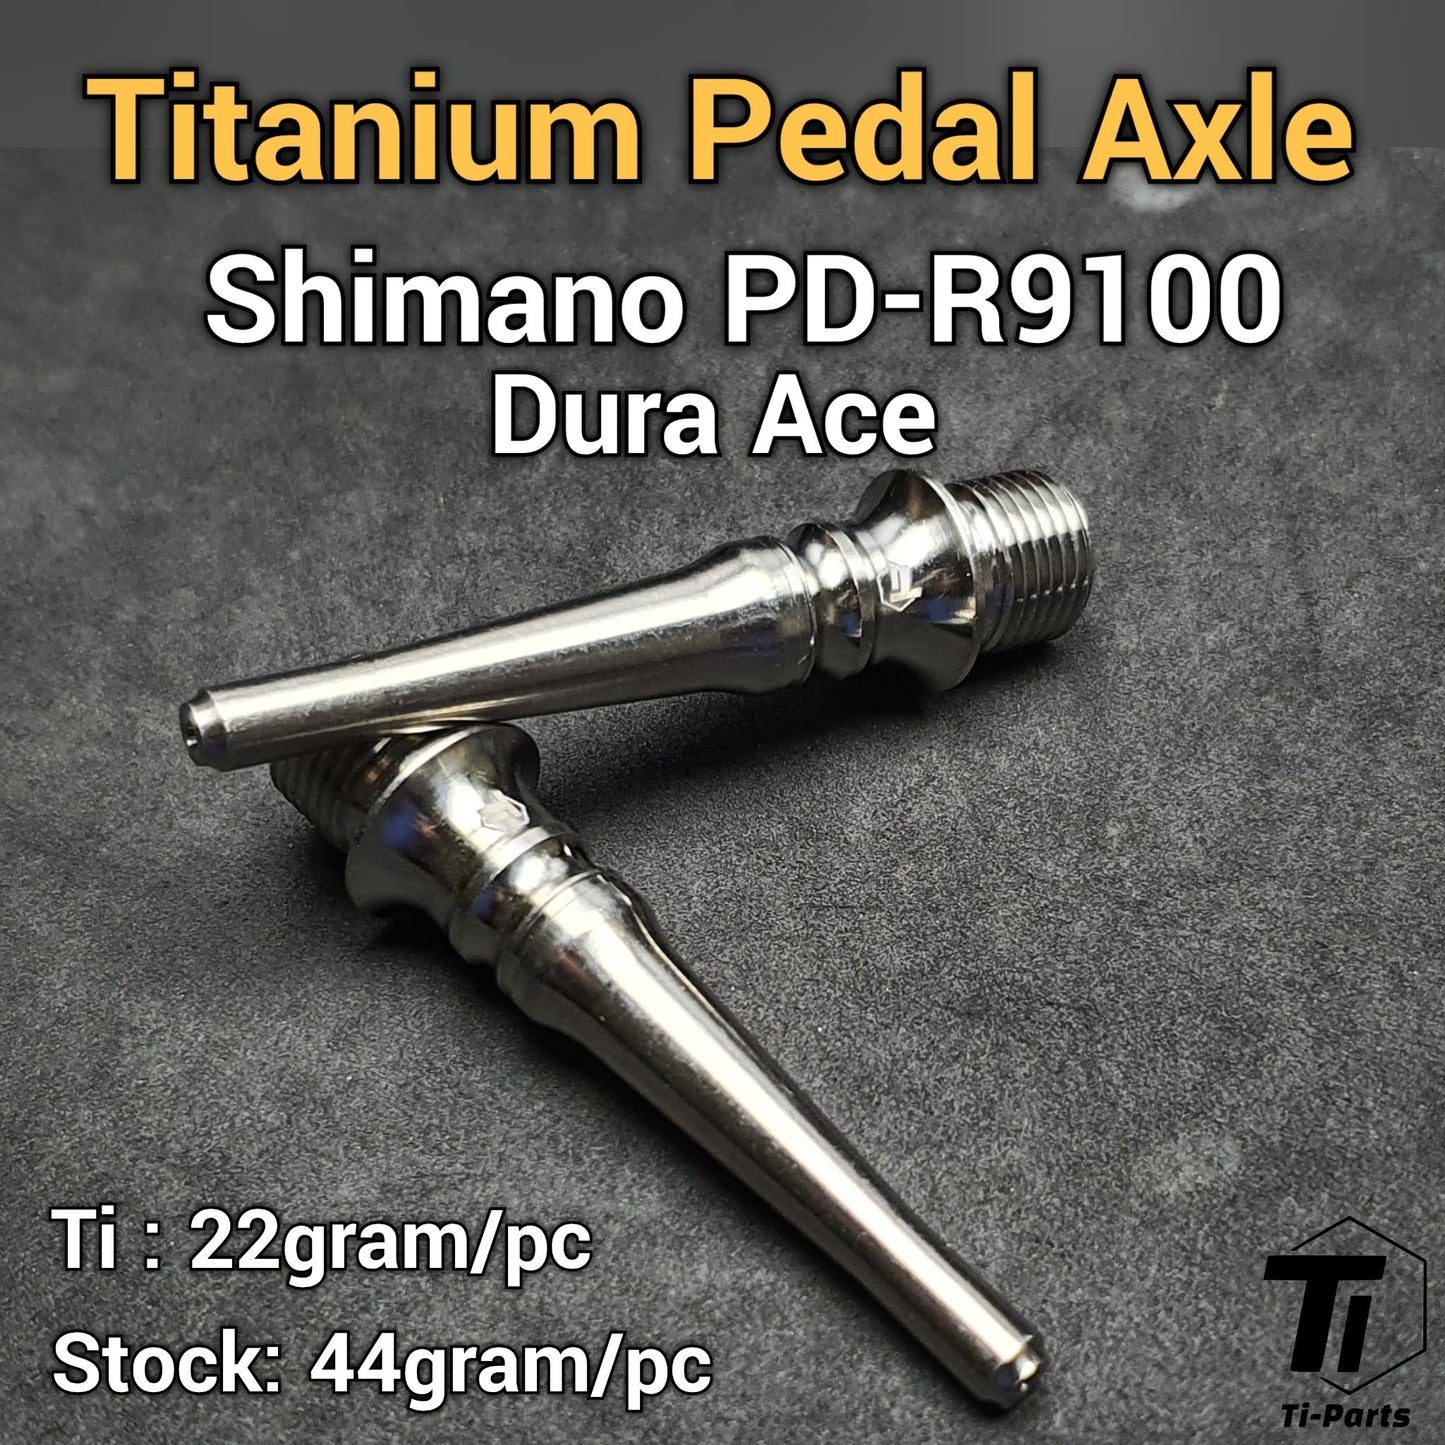 Титановая педальная ось для Shimano | +4 мм M9120 M9020 M9000 M8000 XT XTR Ultegra Dura Ace 9000 6800 R8000 R9100 M975 M980 M990